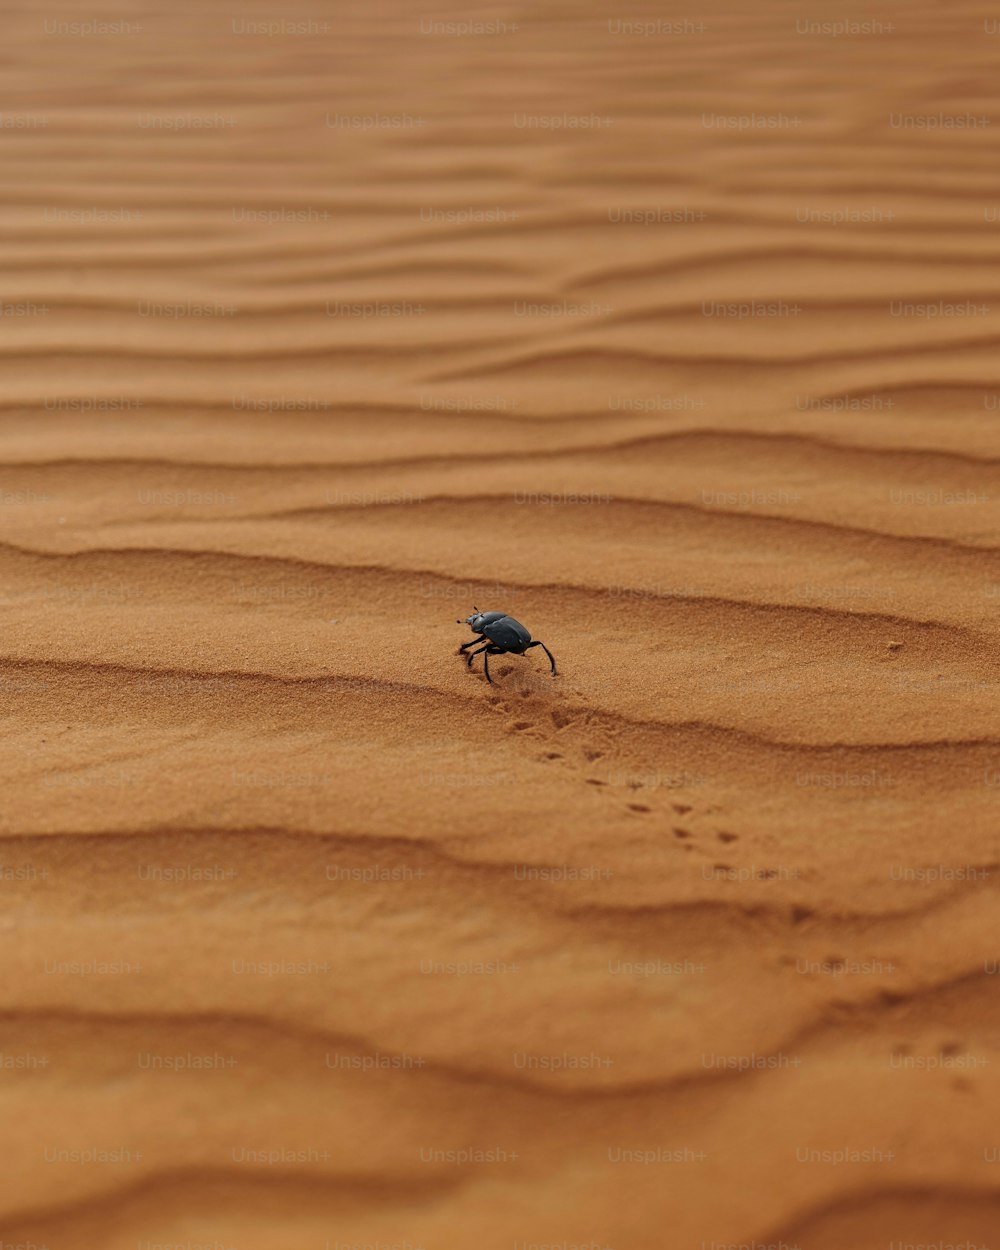 Un insecte rampant sur une zone sablonneuse dans le désert